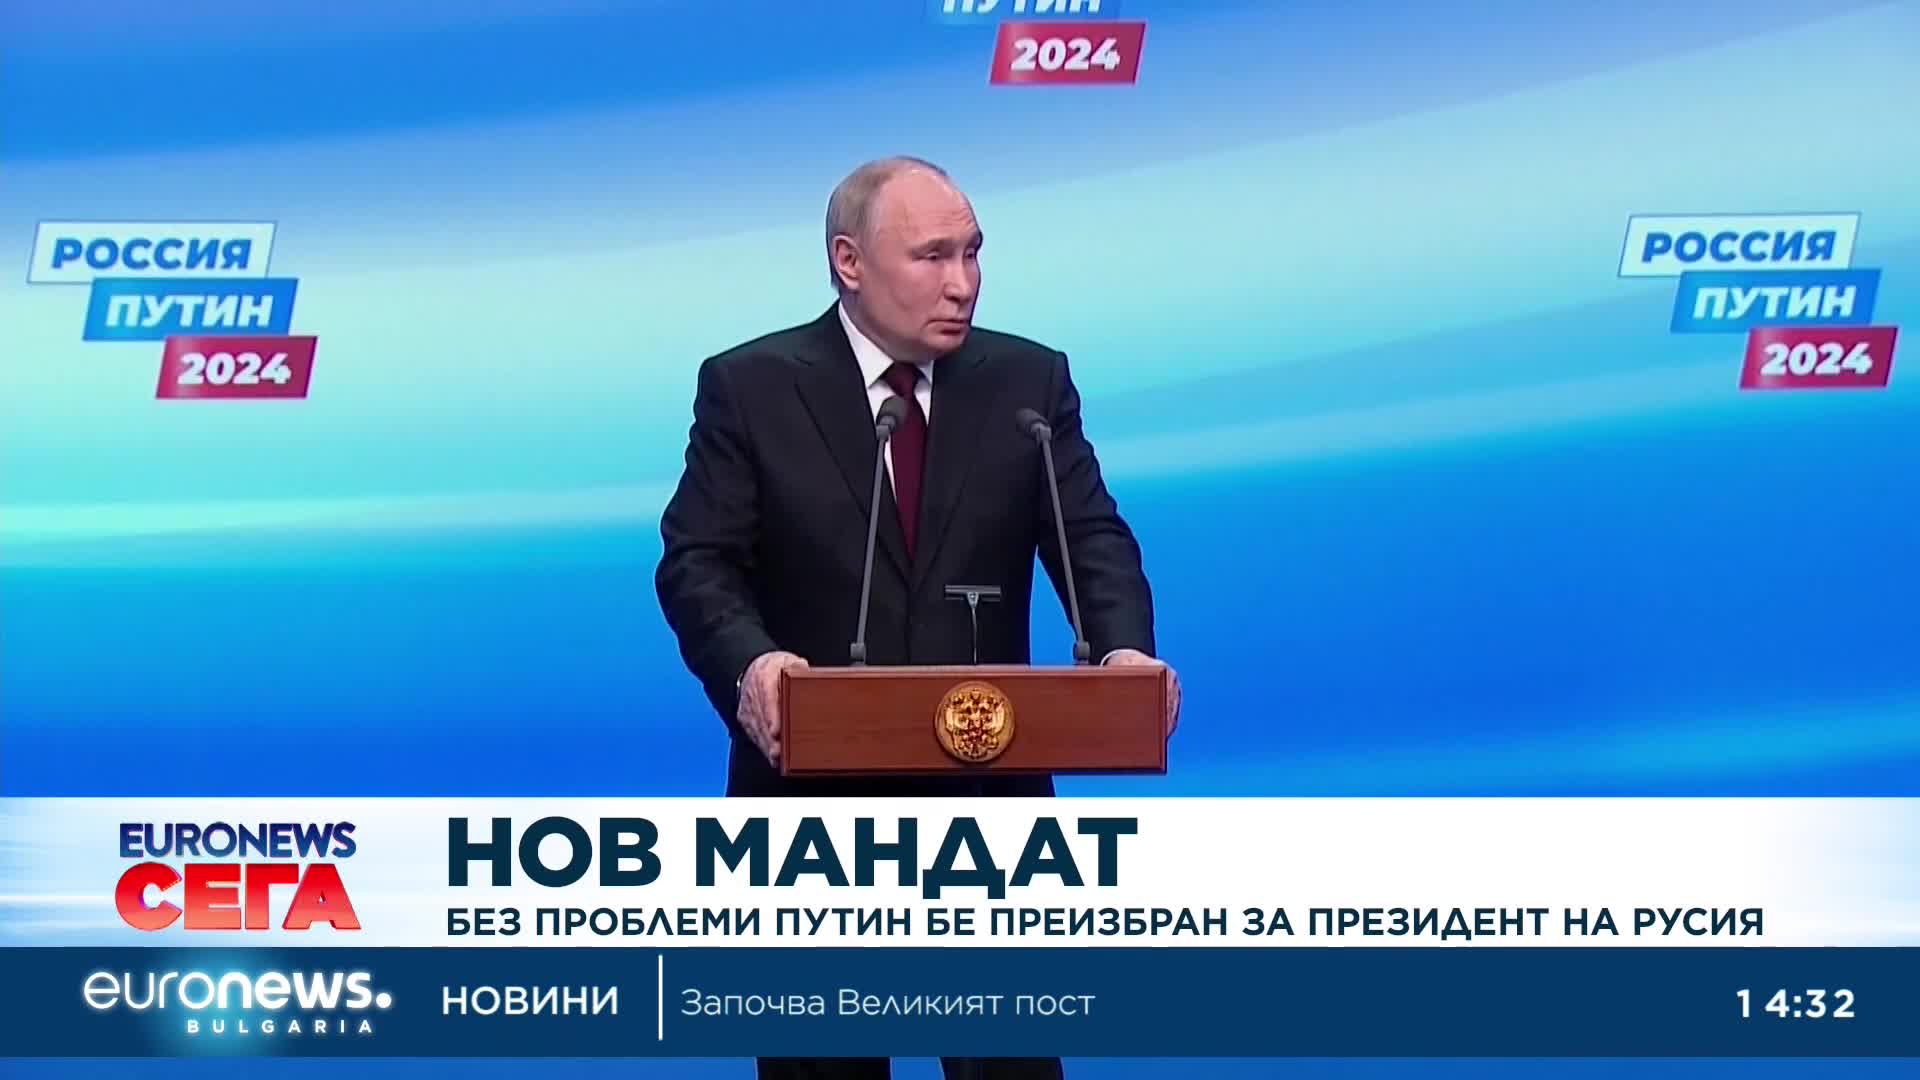 Без проблеми Путин бе преизбран за президент на Русия